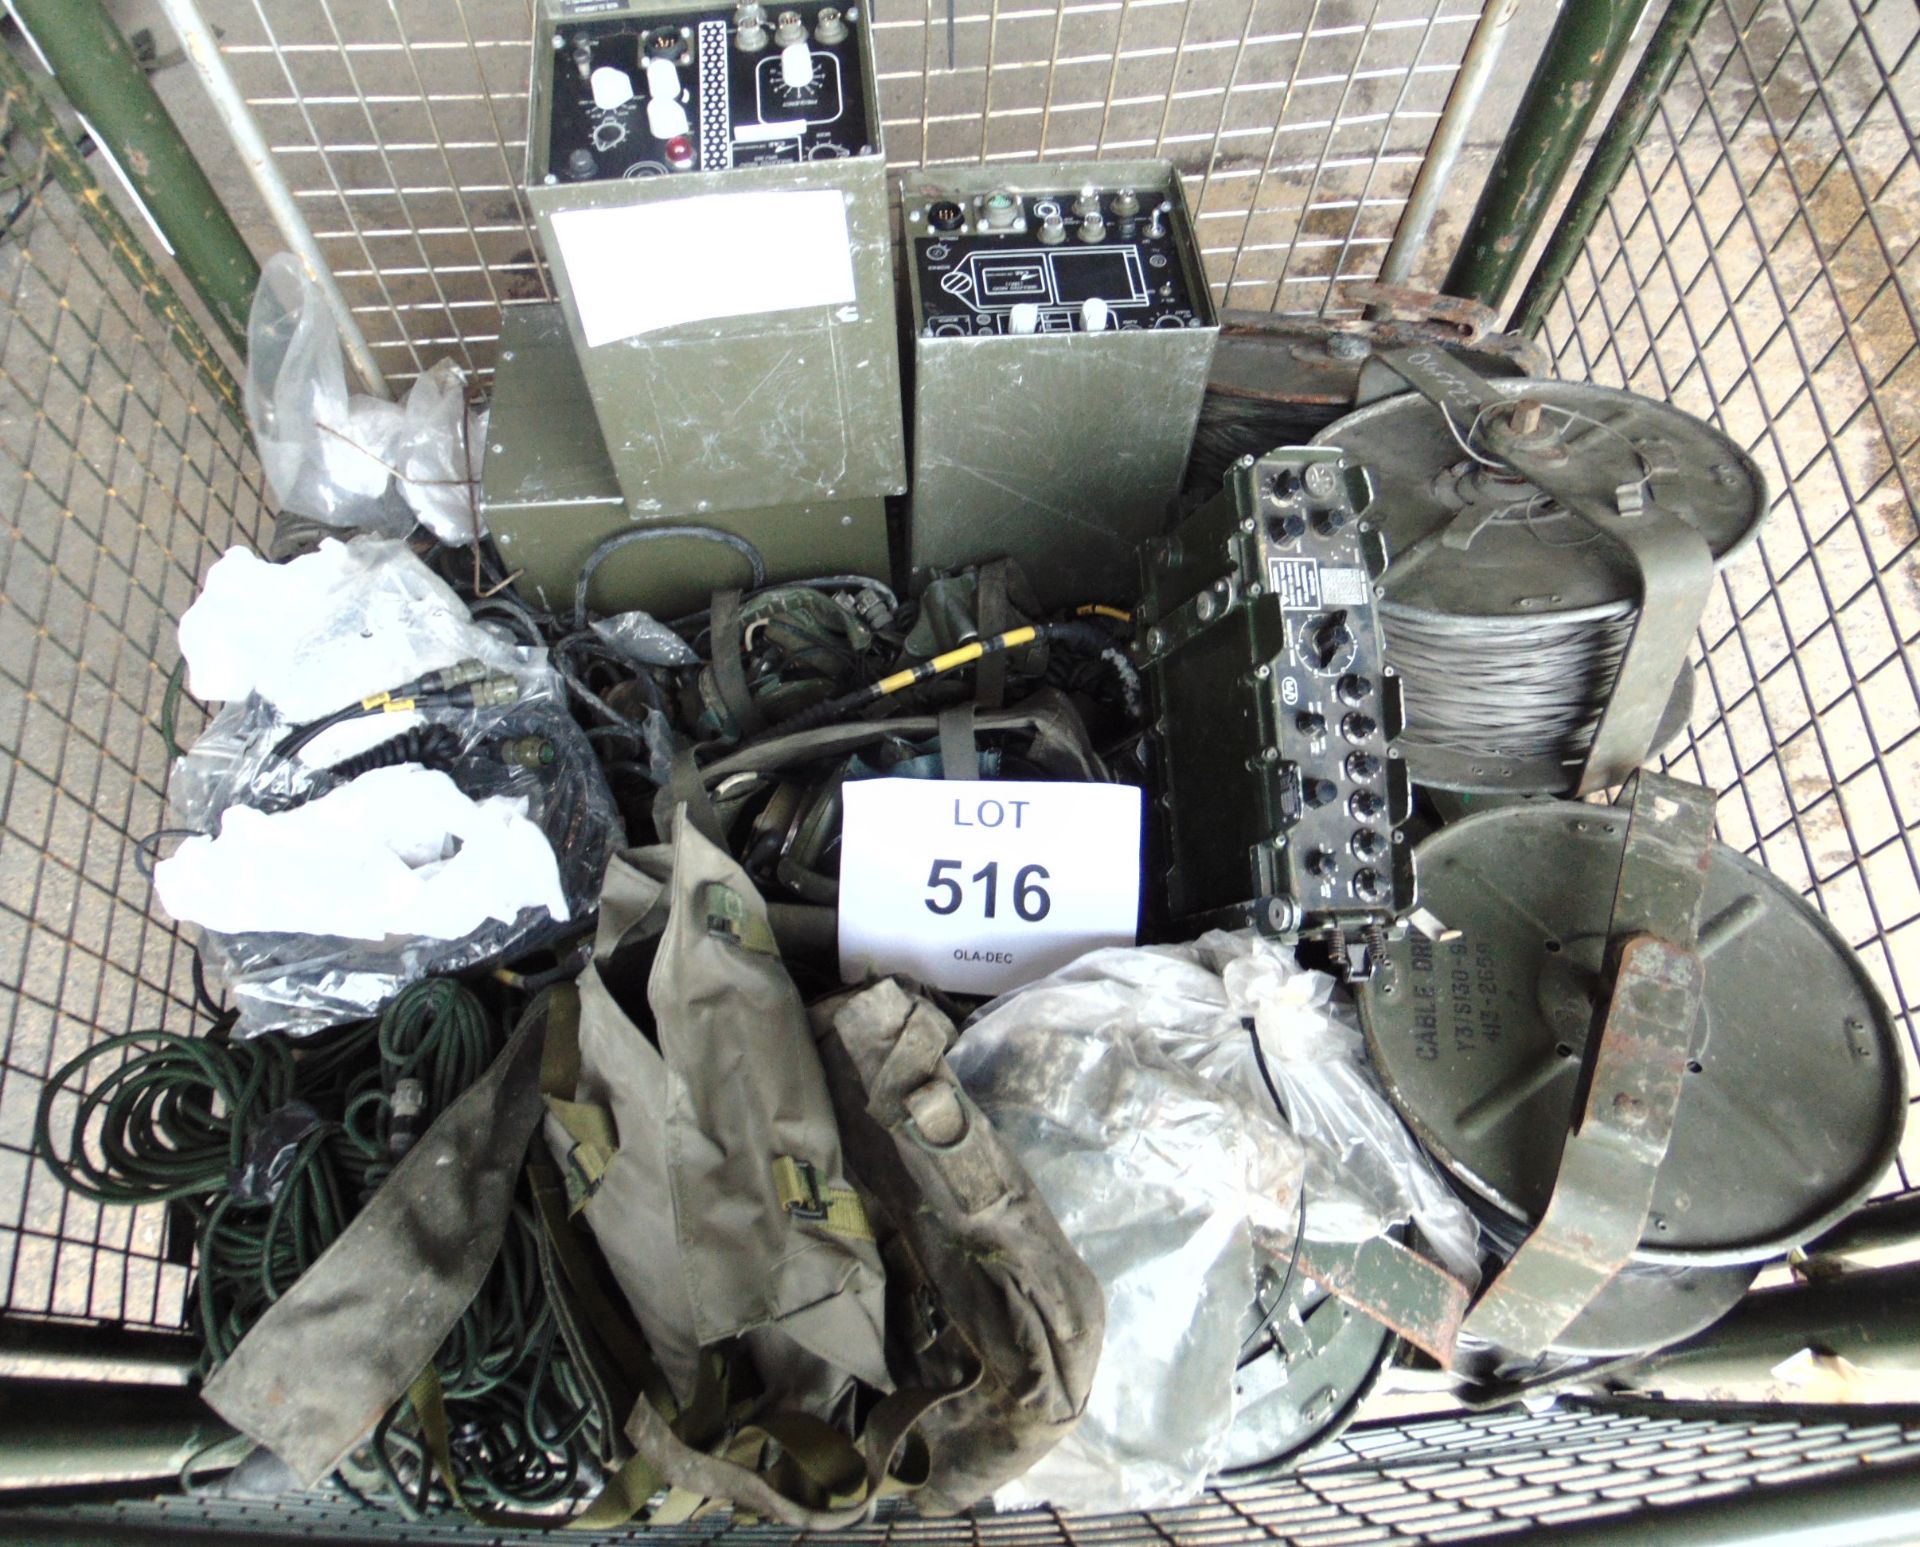 Stillage of Clansman Radio Equipment as shown